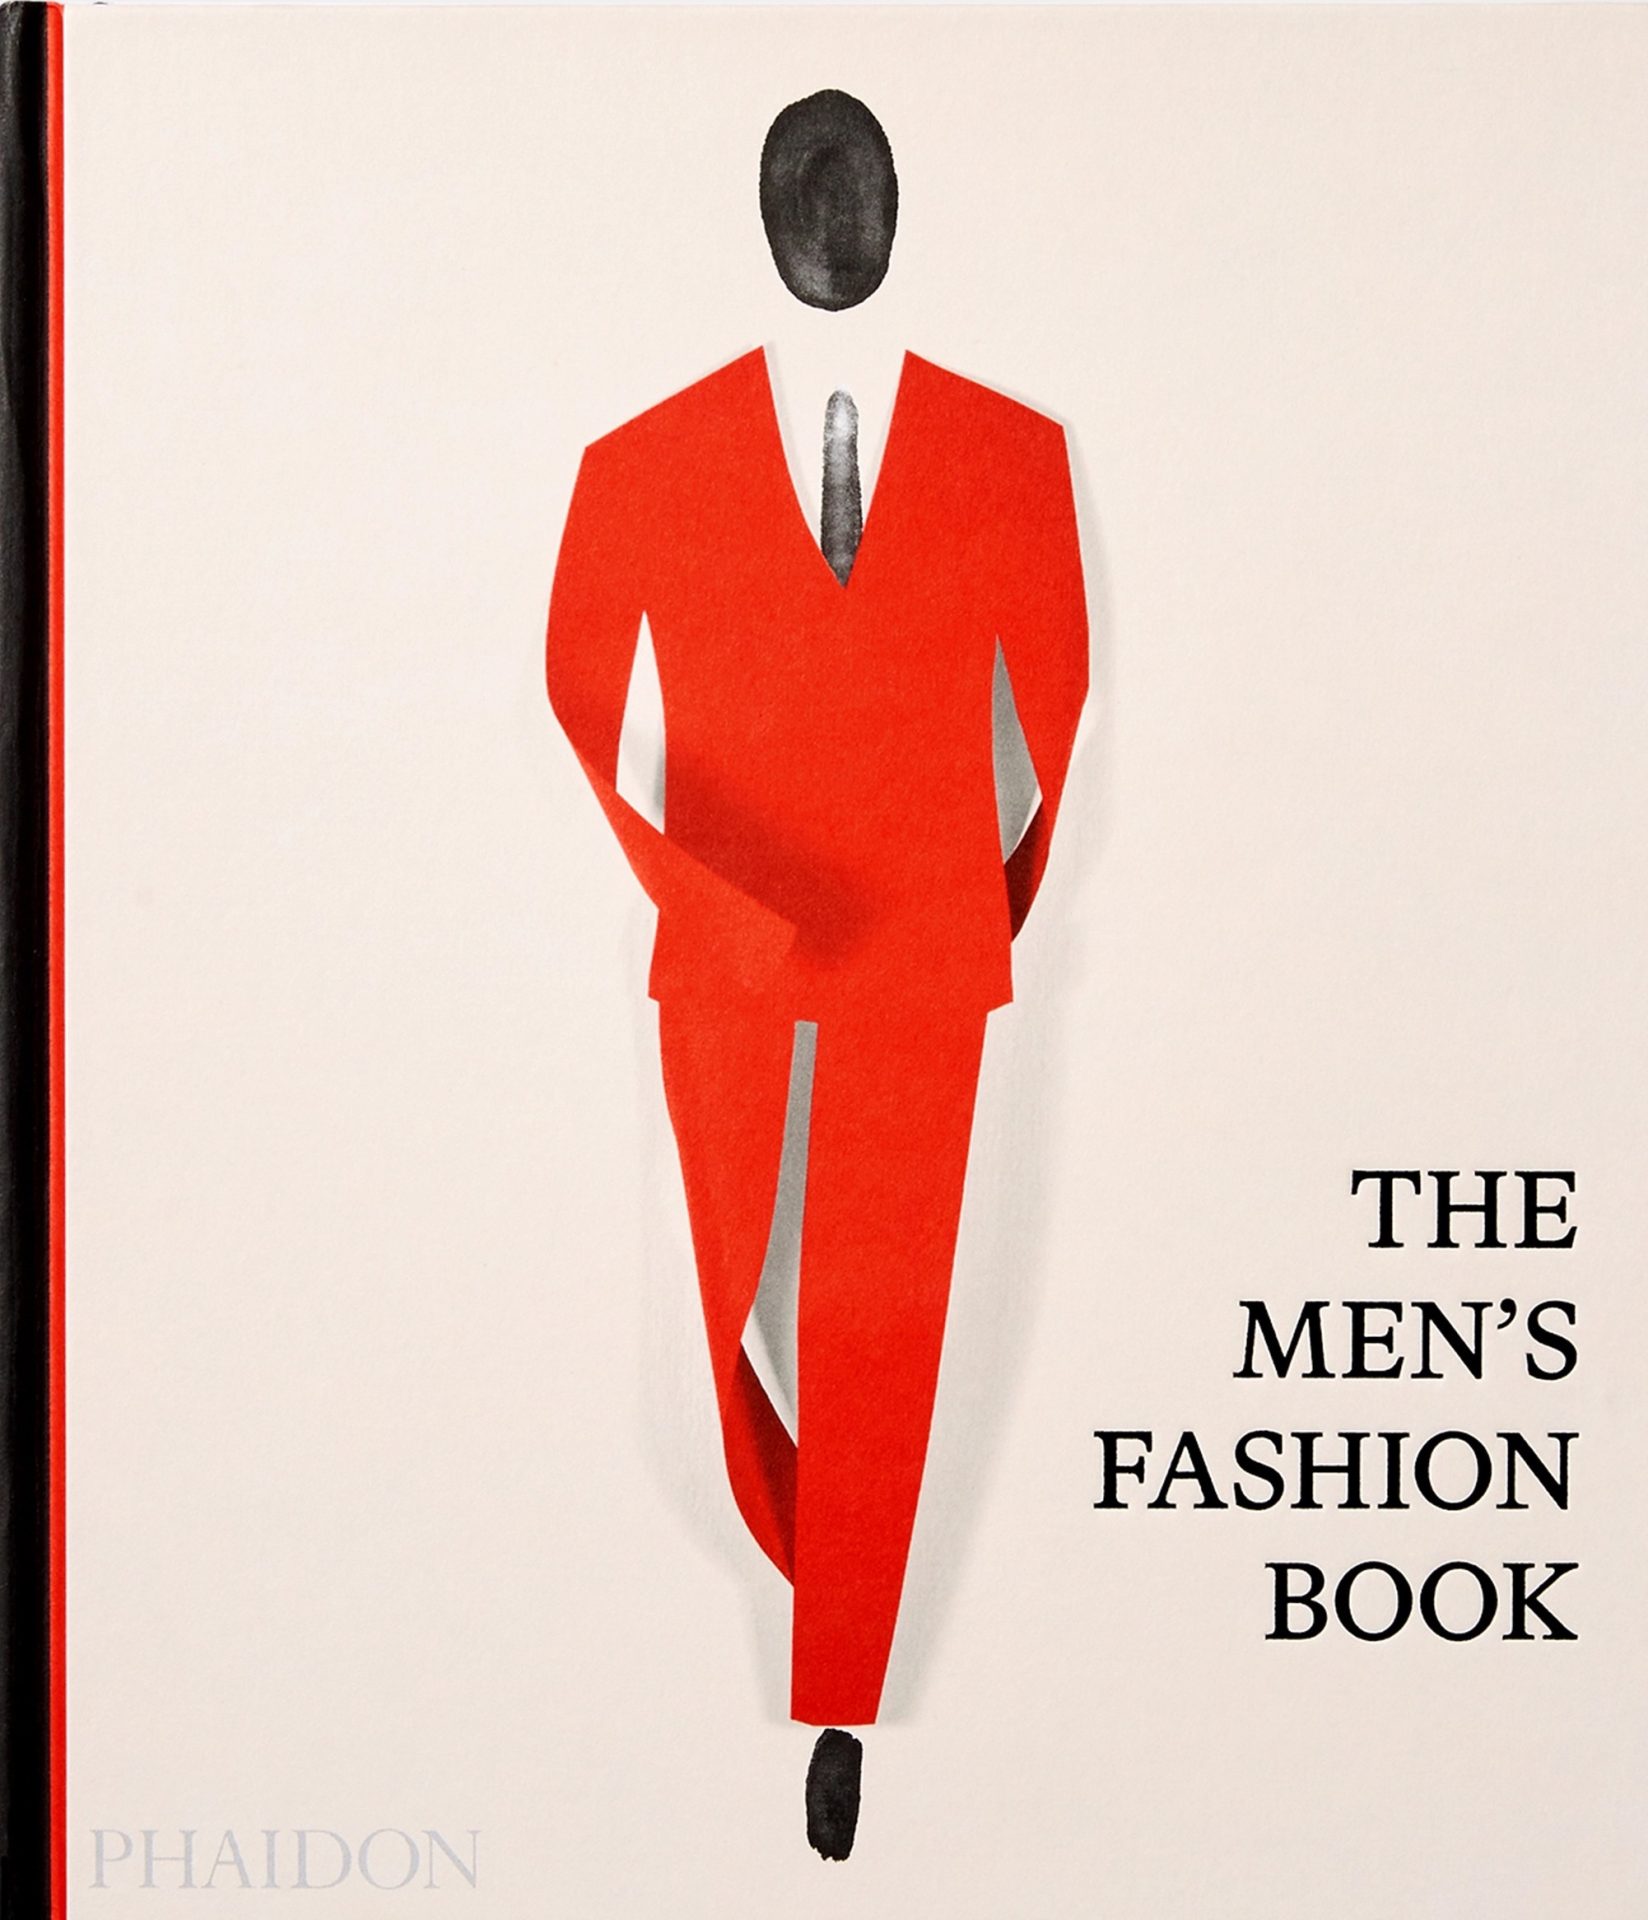 The Men's Fashion Book